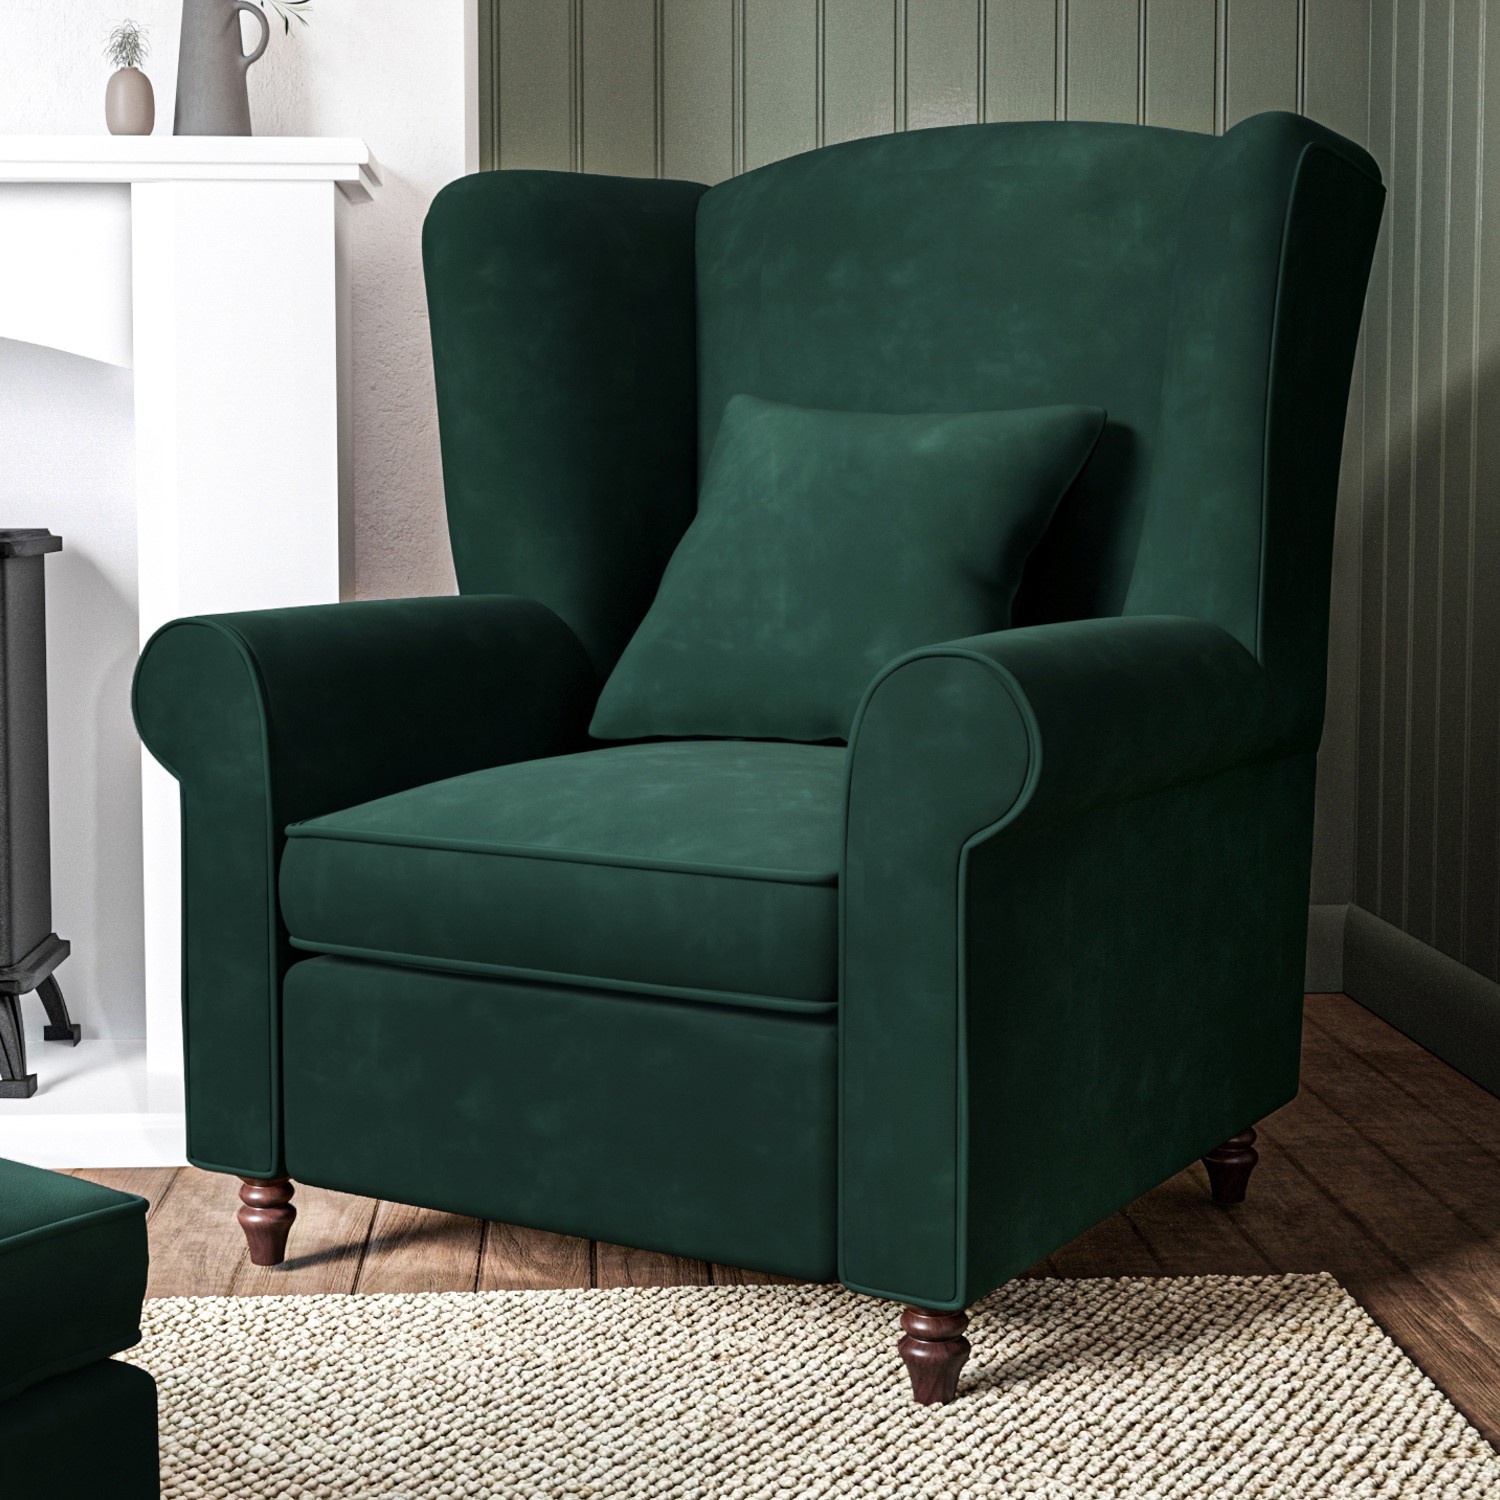 Photo of Green velvet high back armchair - rupert